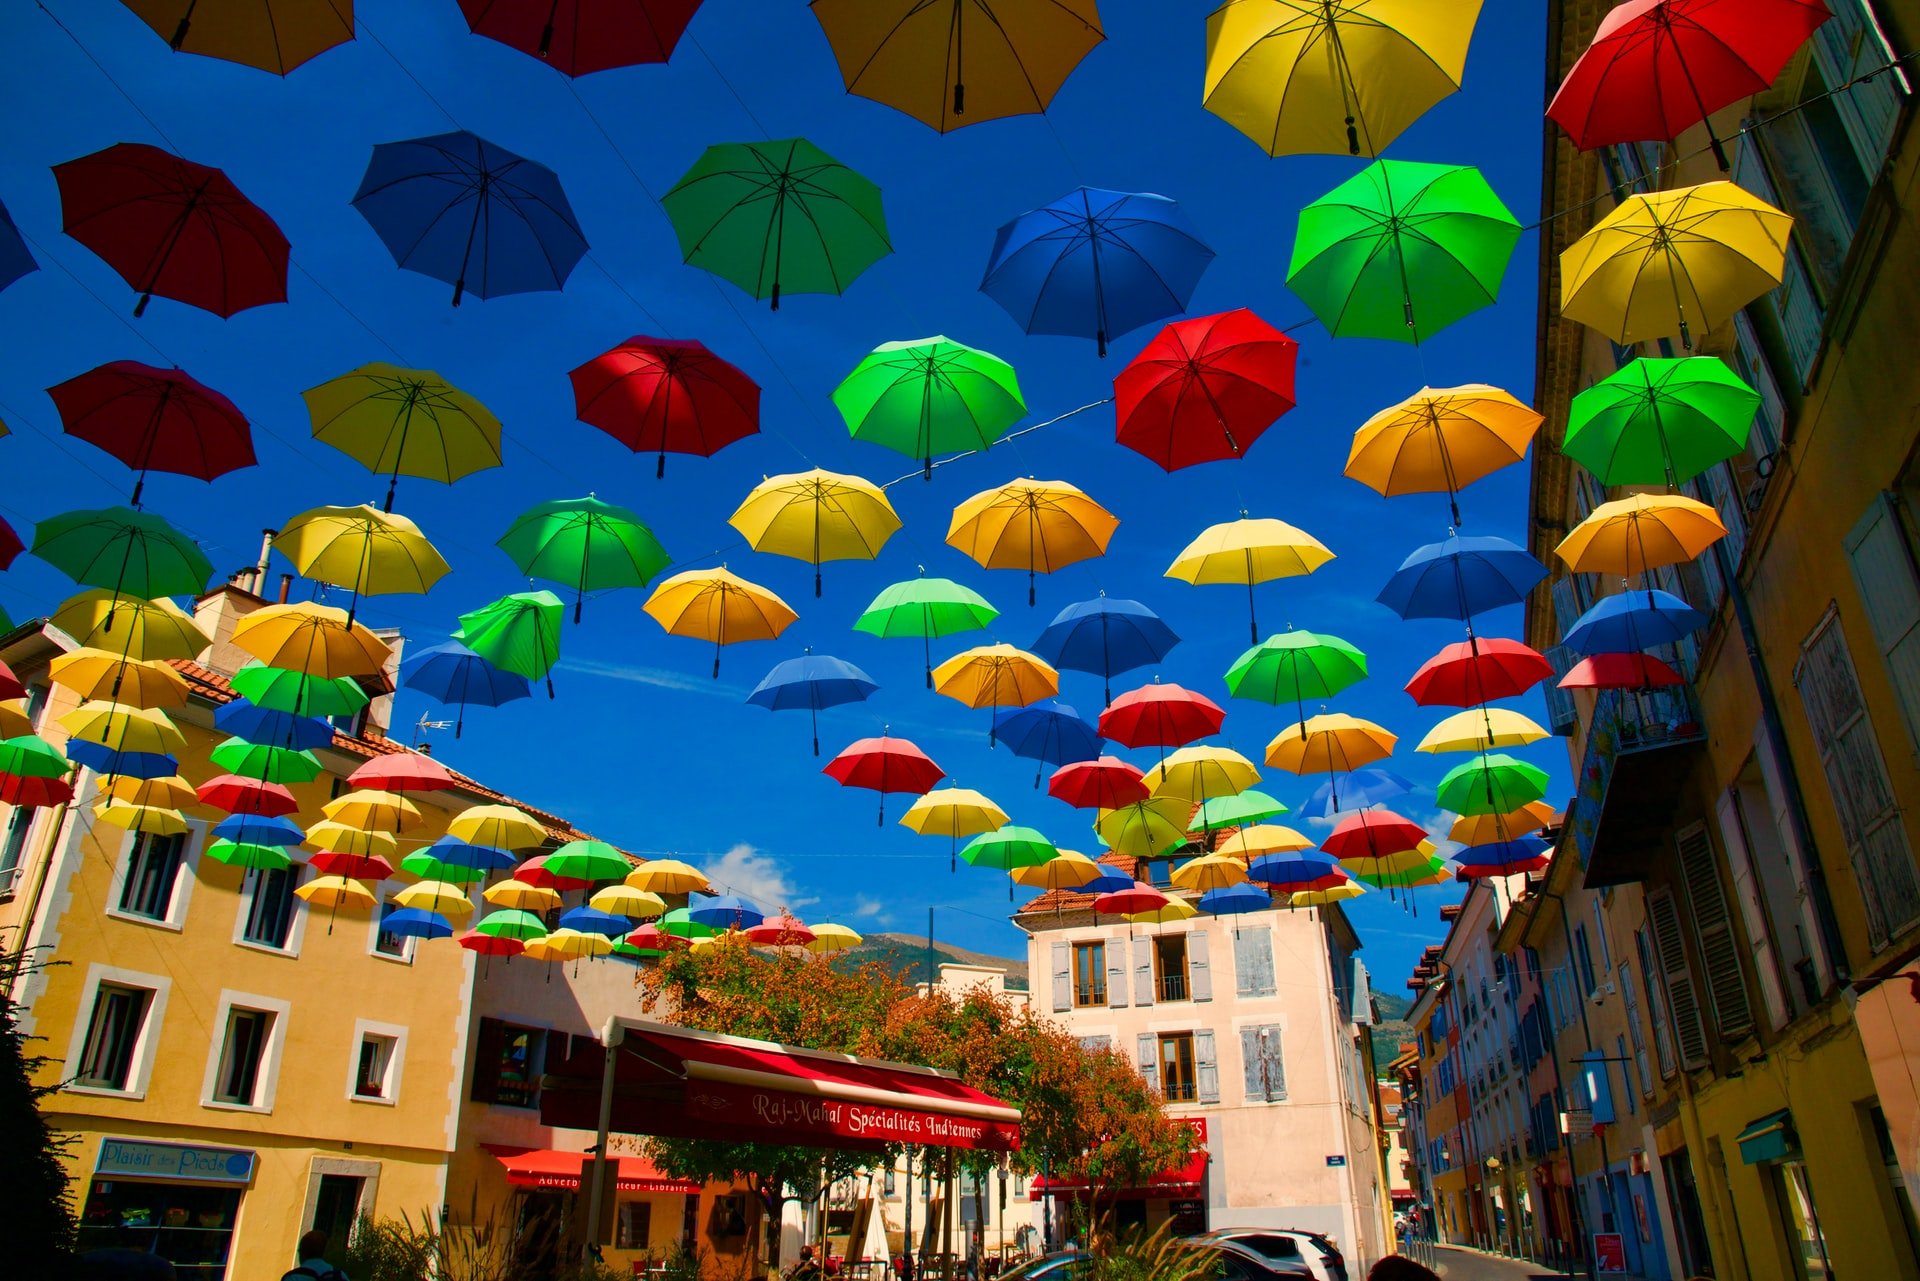 Multi-colored umbrellas in sky